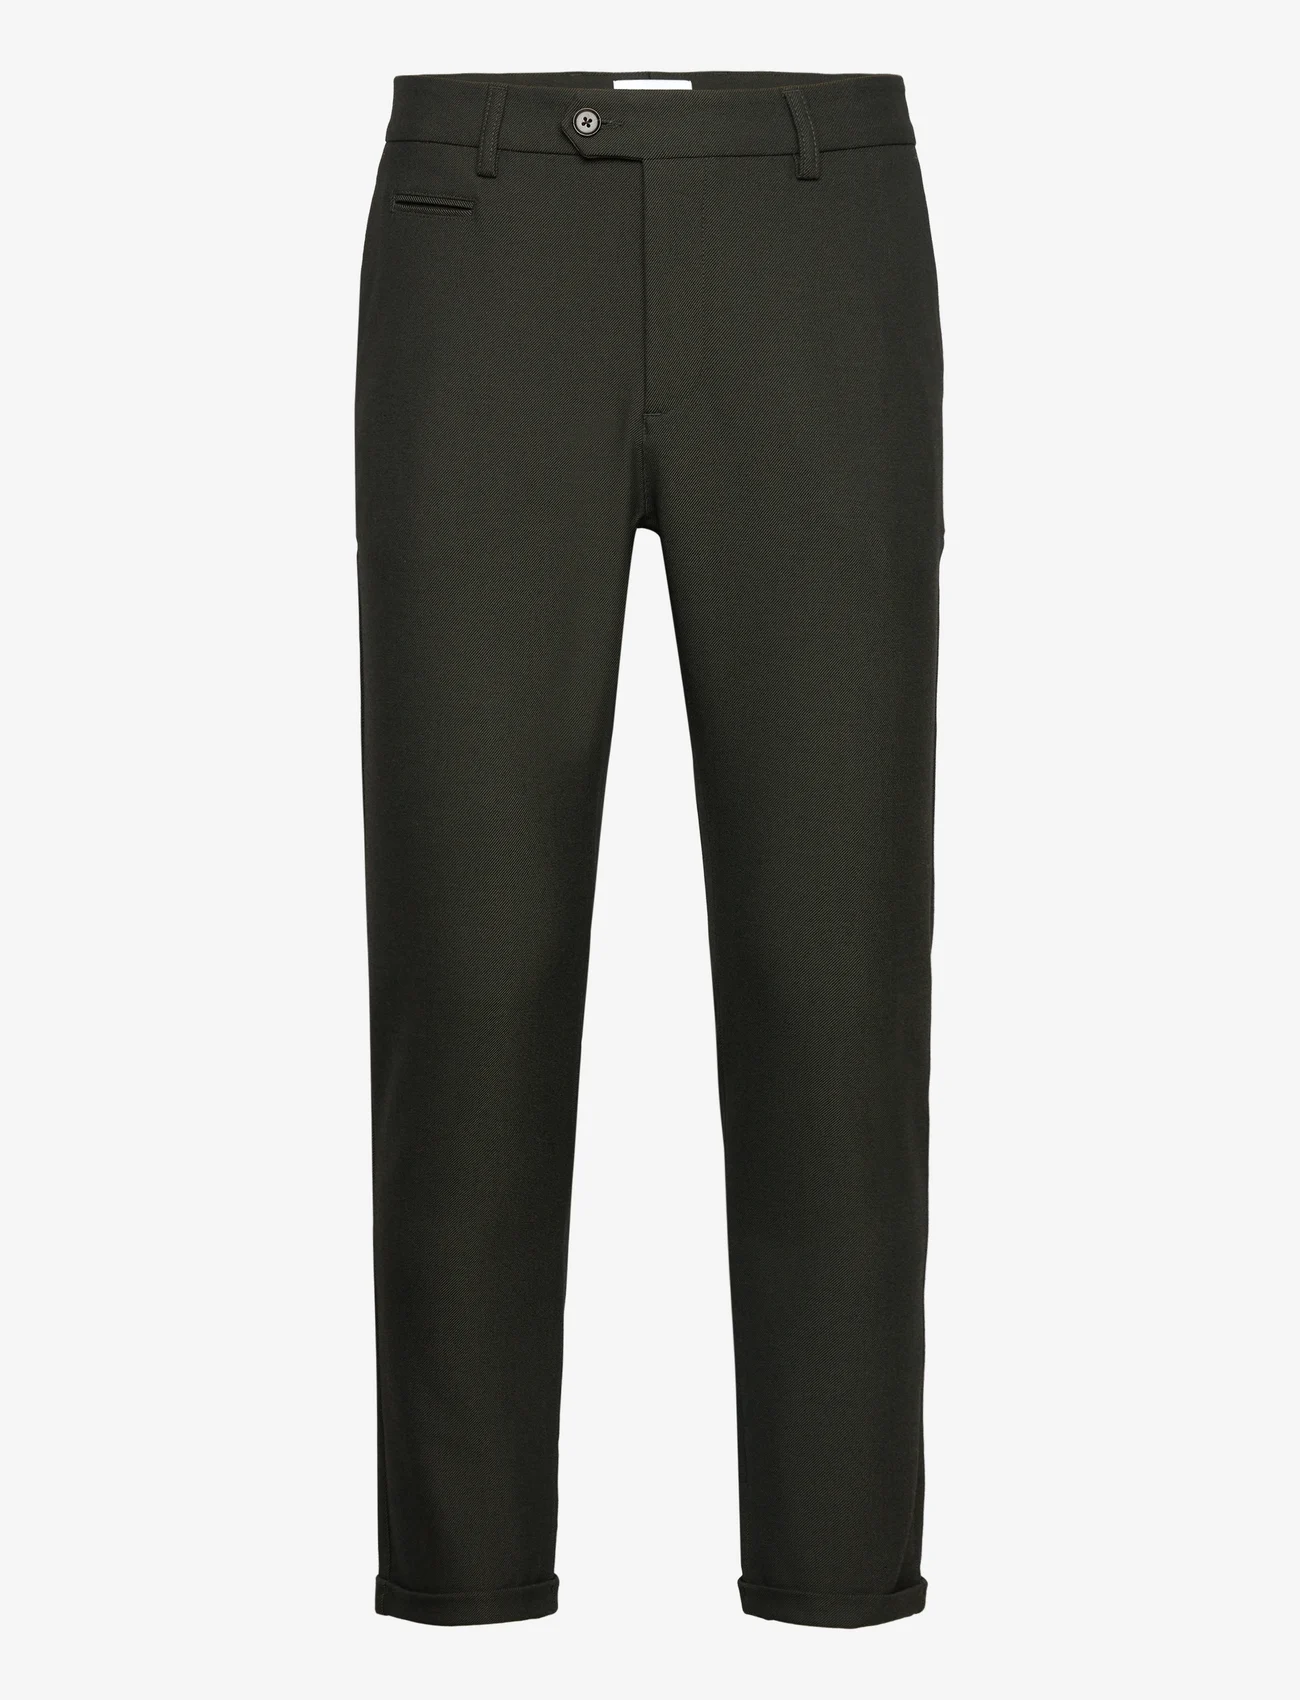 Les Deux - Como Suit Pants - Seasonal - nordic style - deep forest/charcoal - 0